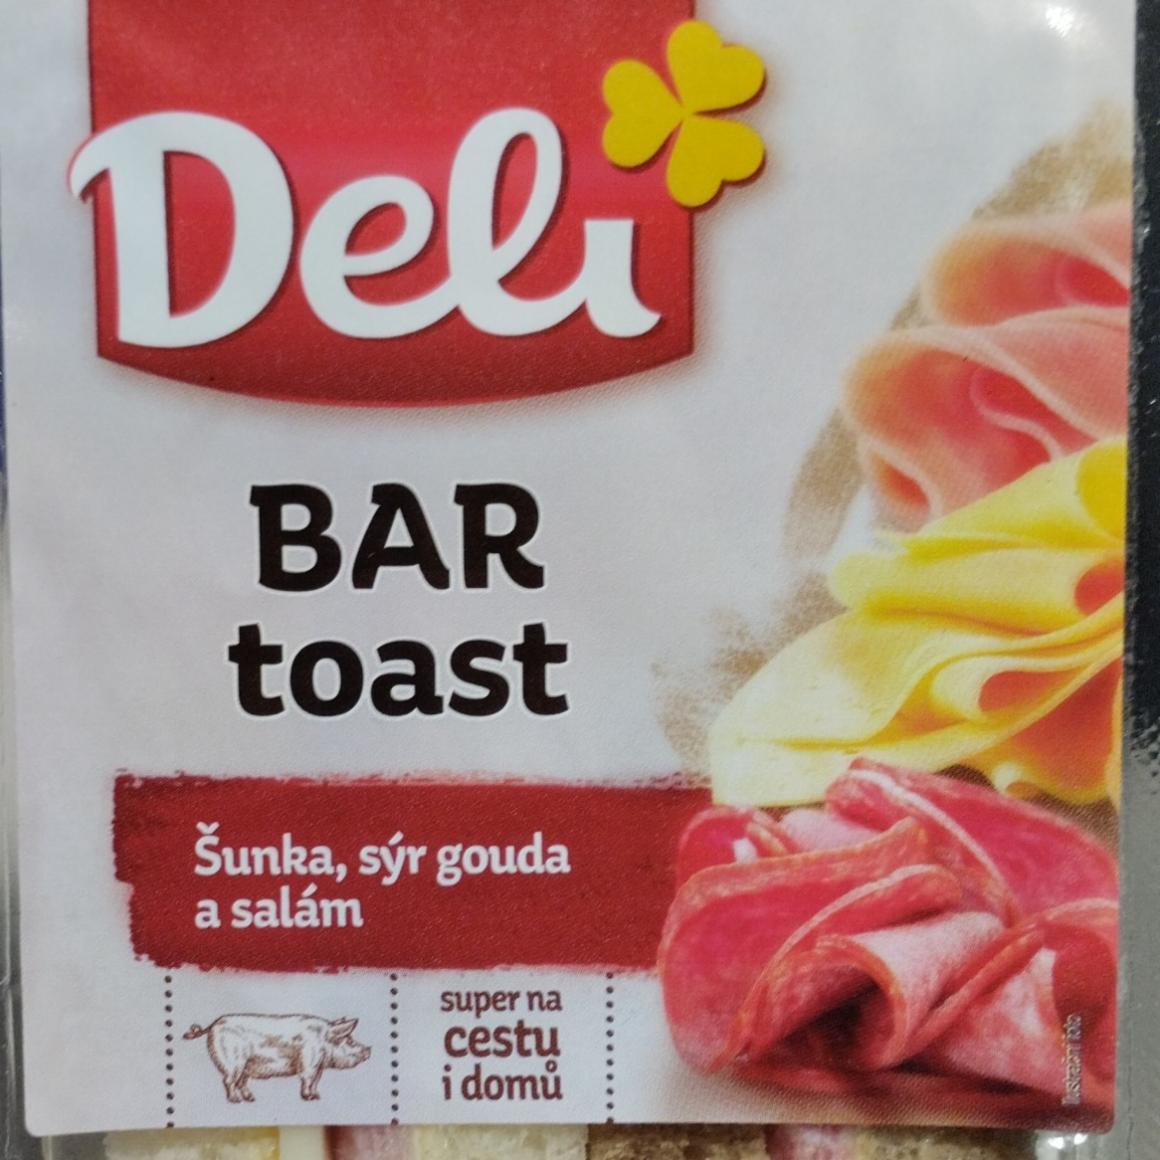 Képek - Bar toast sonka, gouda sajt, szalámi Deli